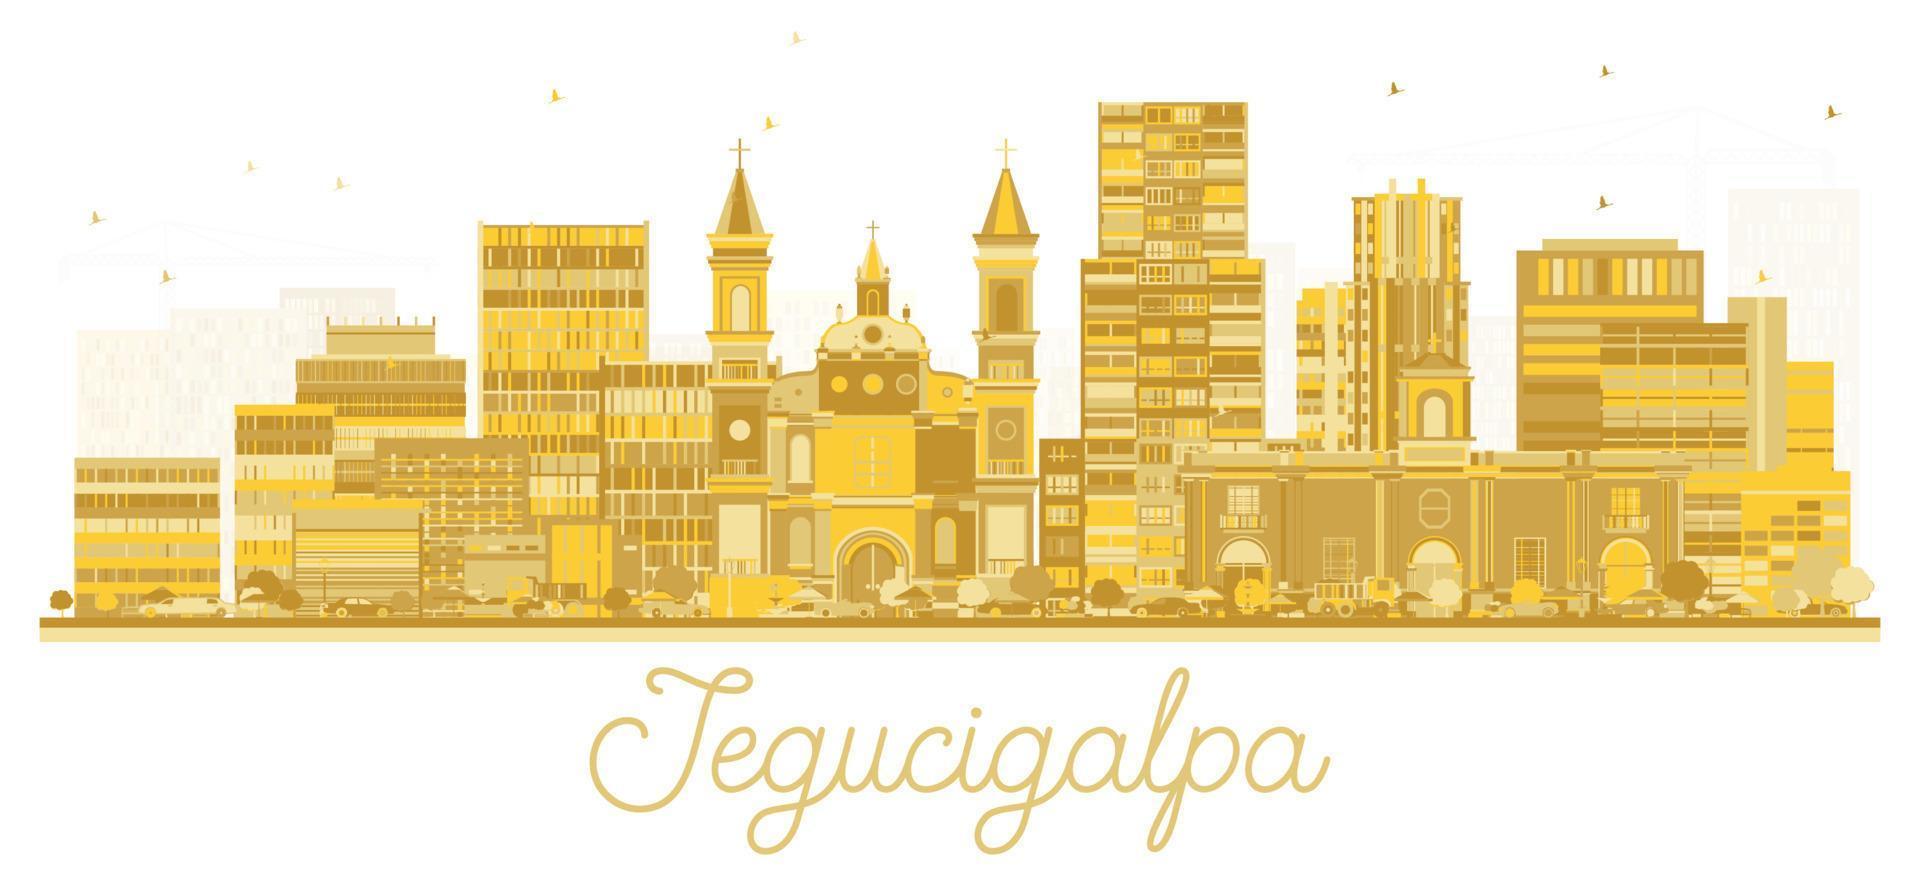 silueta del horizonte de la ciudad de tegucigalpa honduras con edificios dorados aislados en blanco. vector